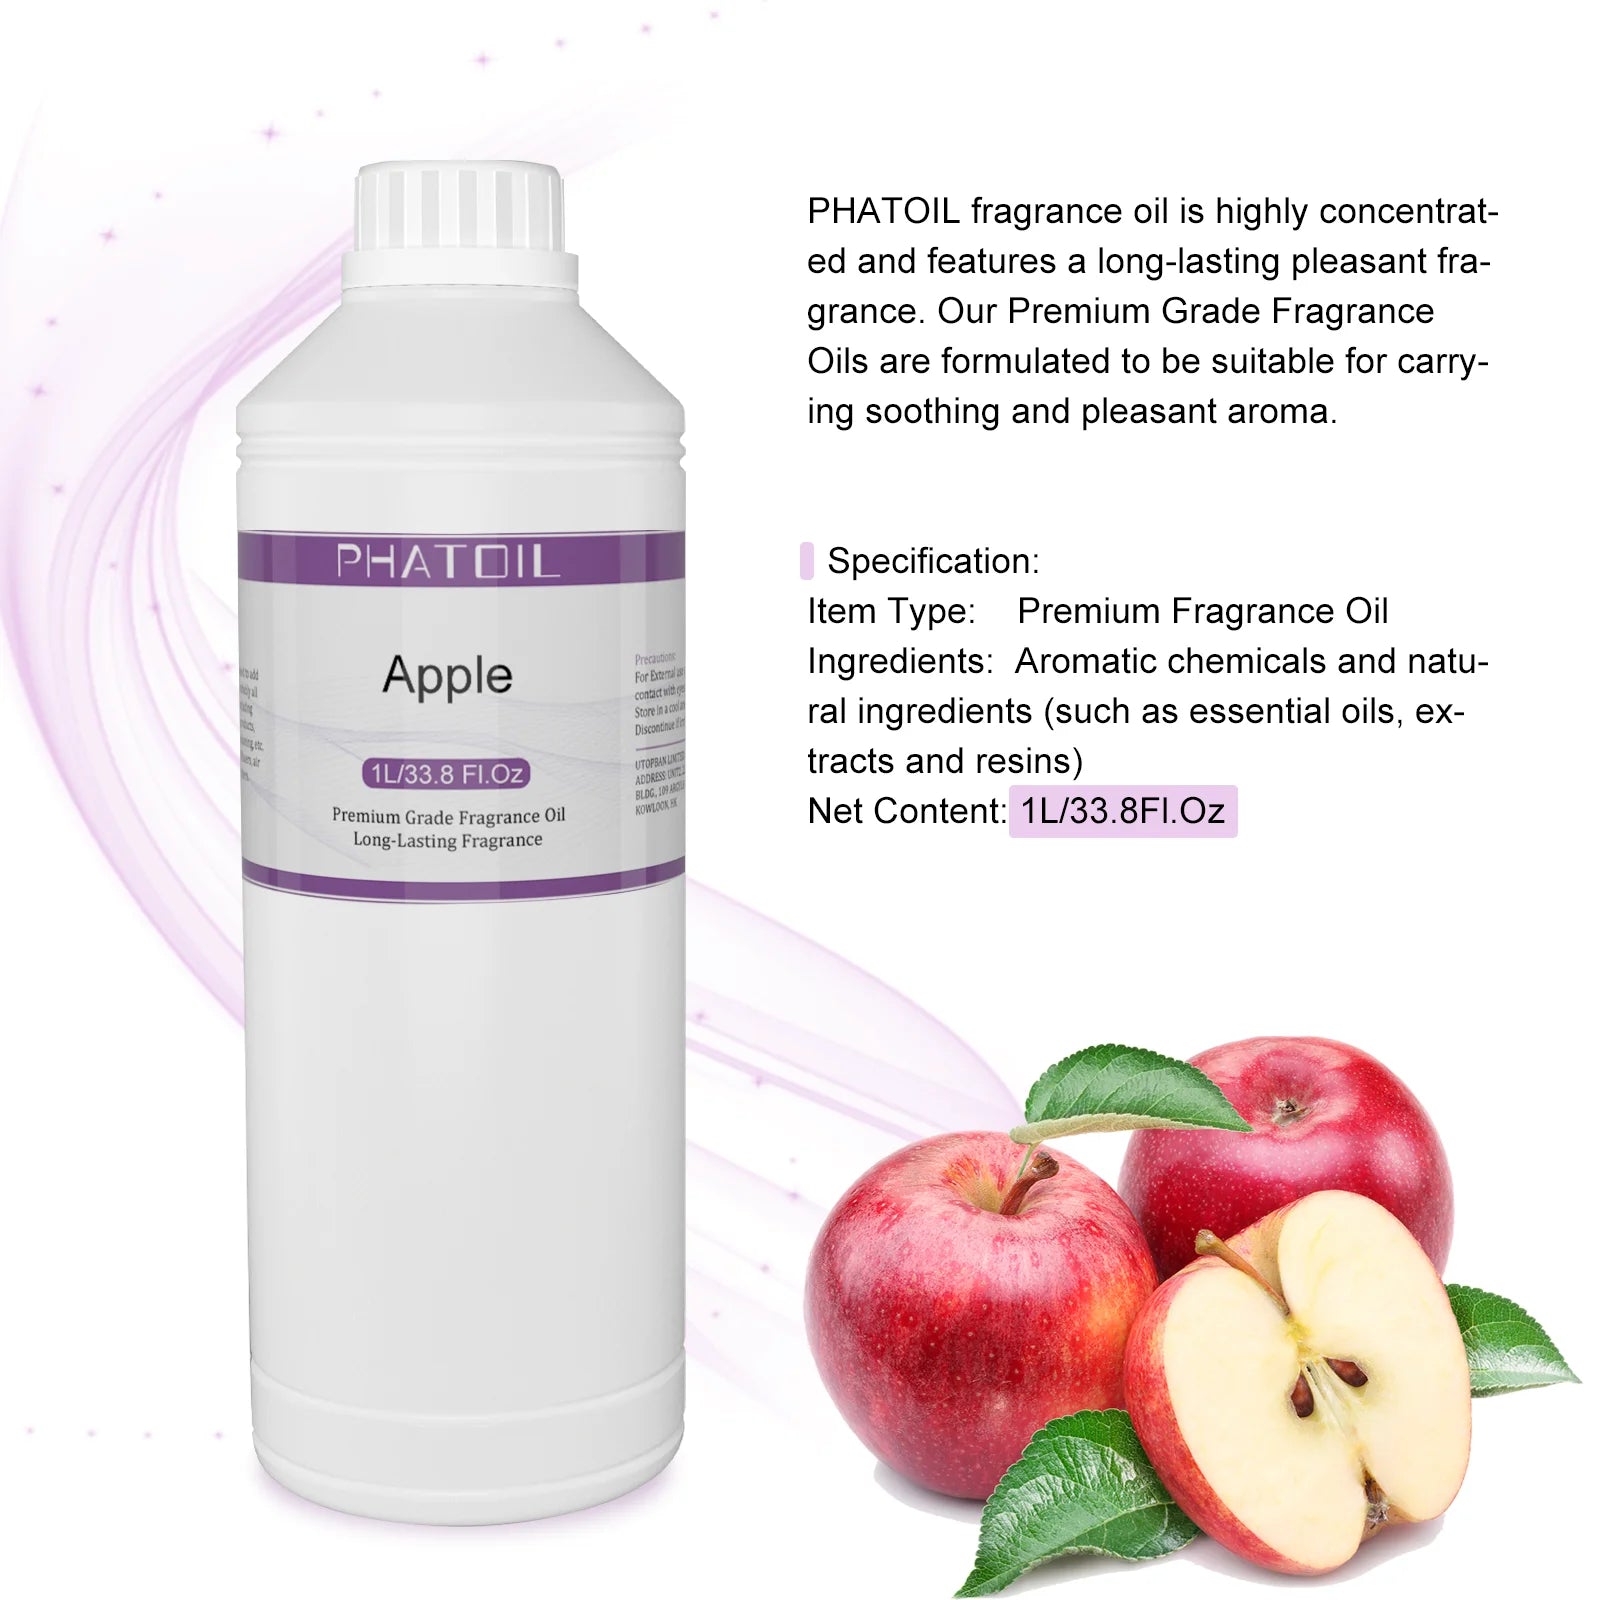 apple fragrance oil